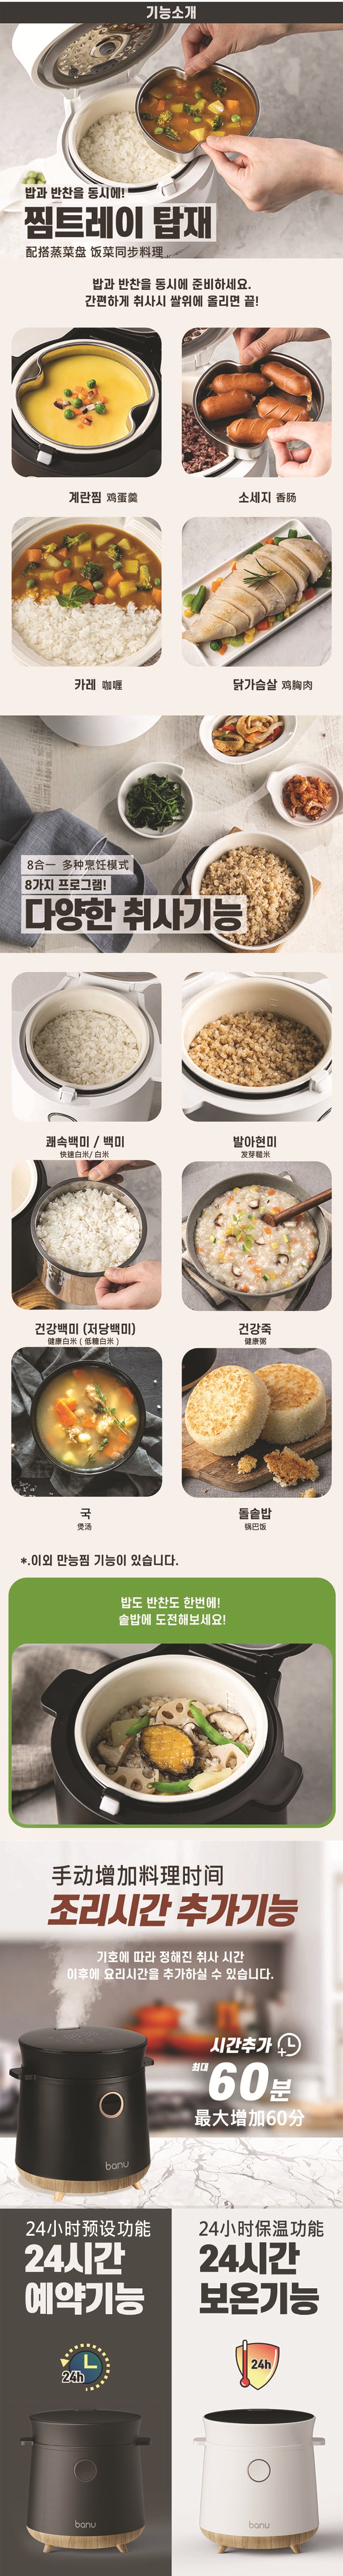 韩国 BANU 高颜值减糖电饭煲 低碳水化合物 多功能 LED 一键式烹饪 白色 1.5 升 脱糖电饭煲